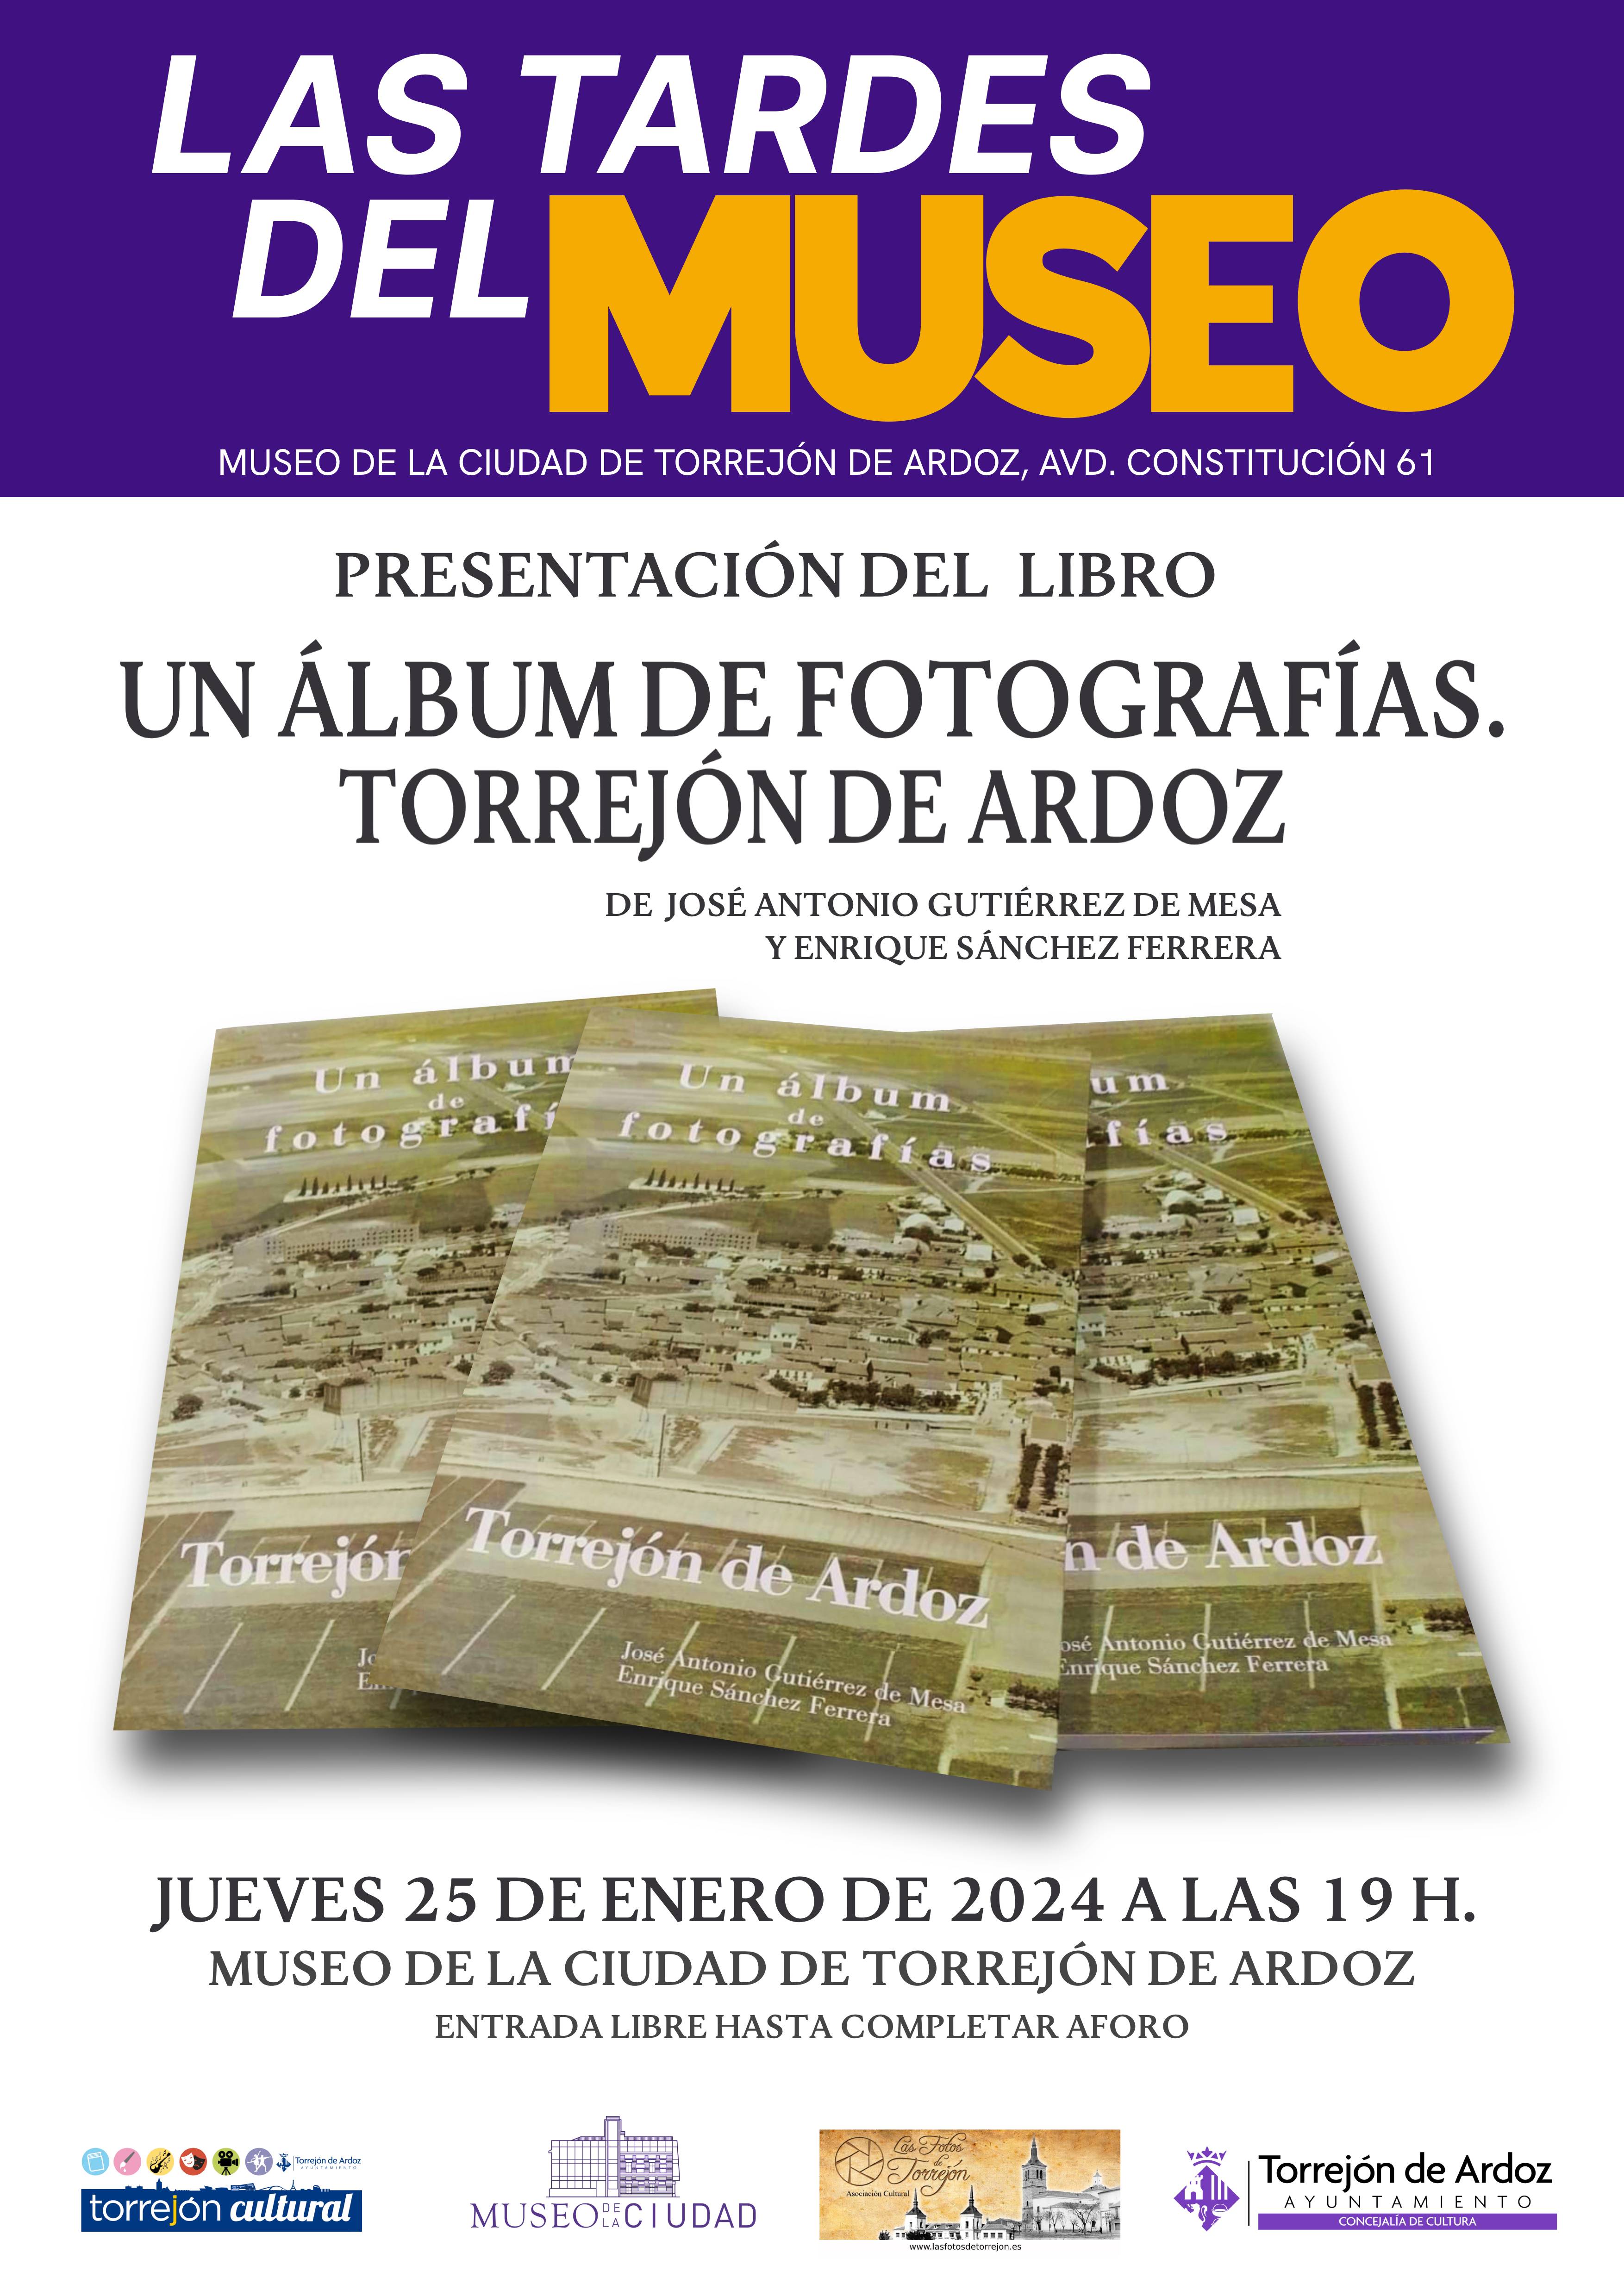 Las Tardes del Museo: Presentación del libro "Un album de fotografías: Torrejón de Ardoz"